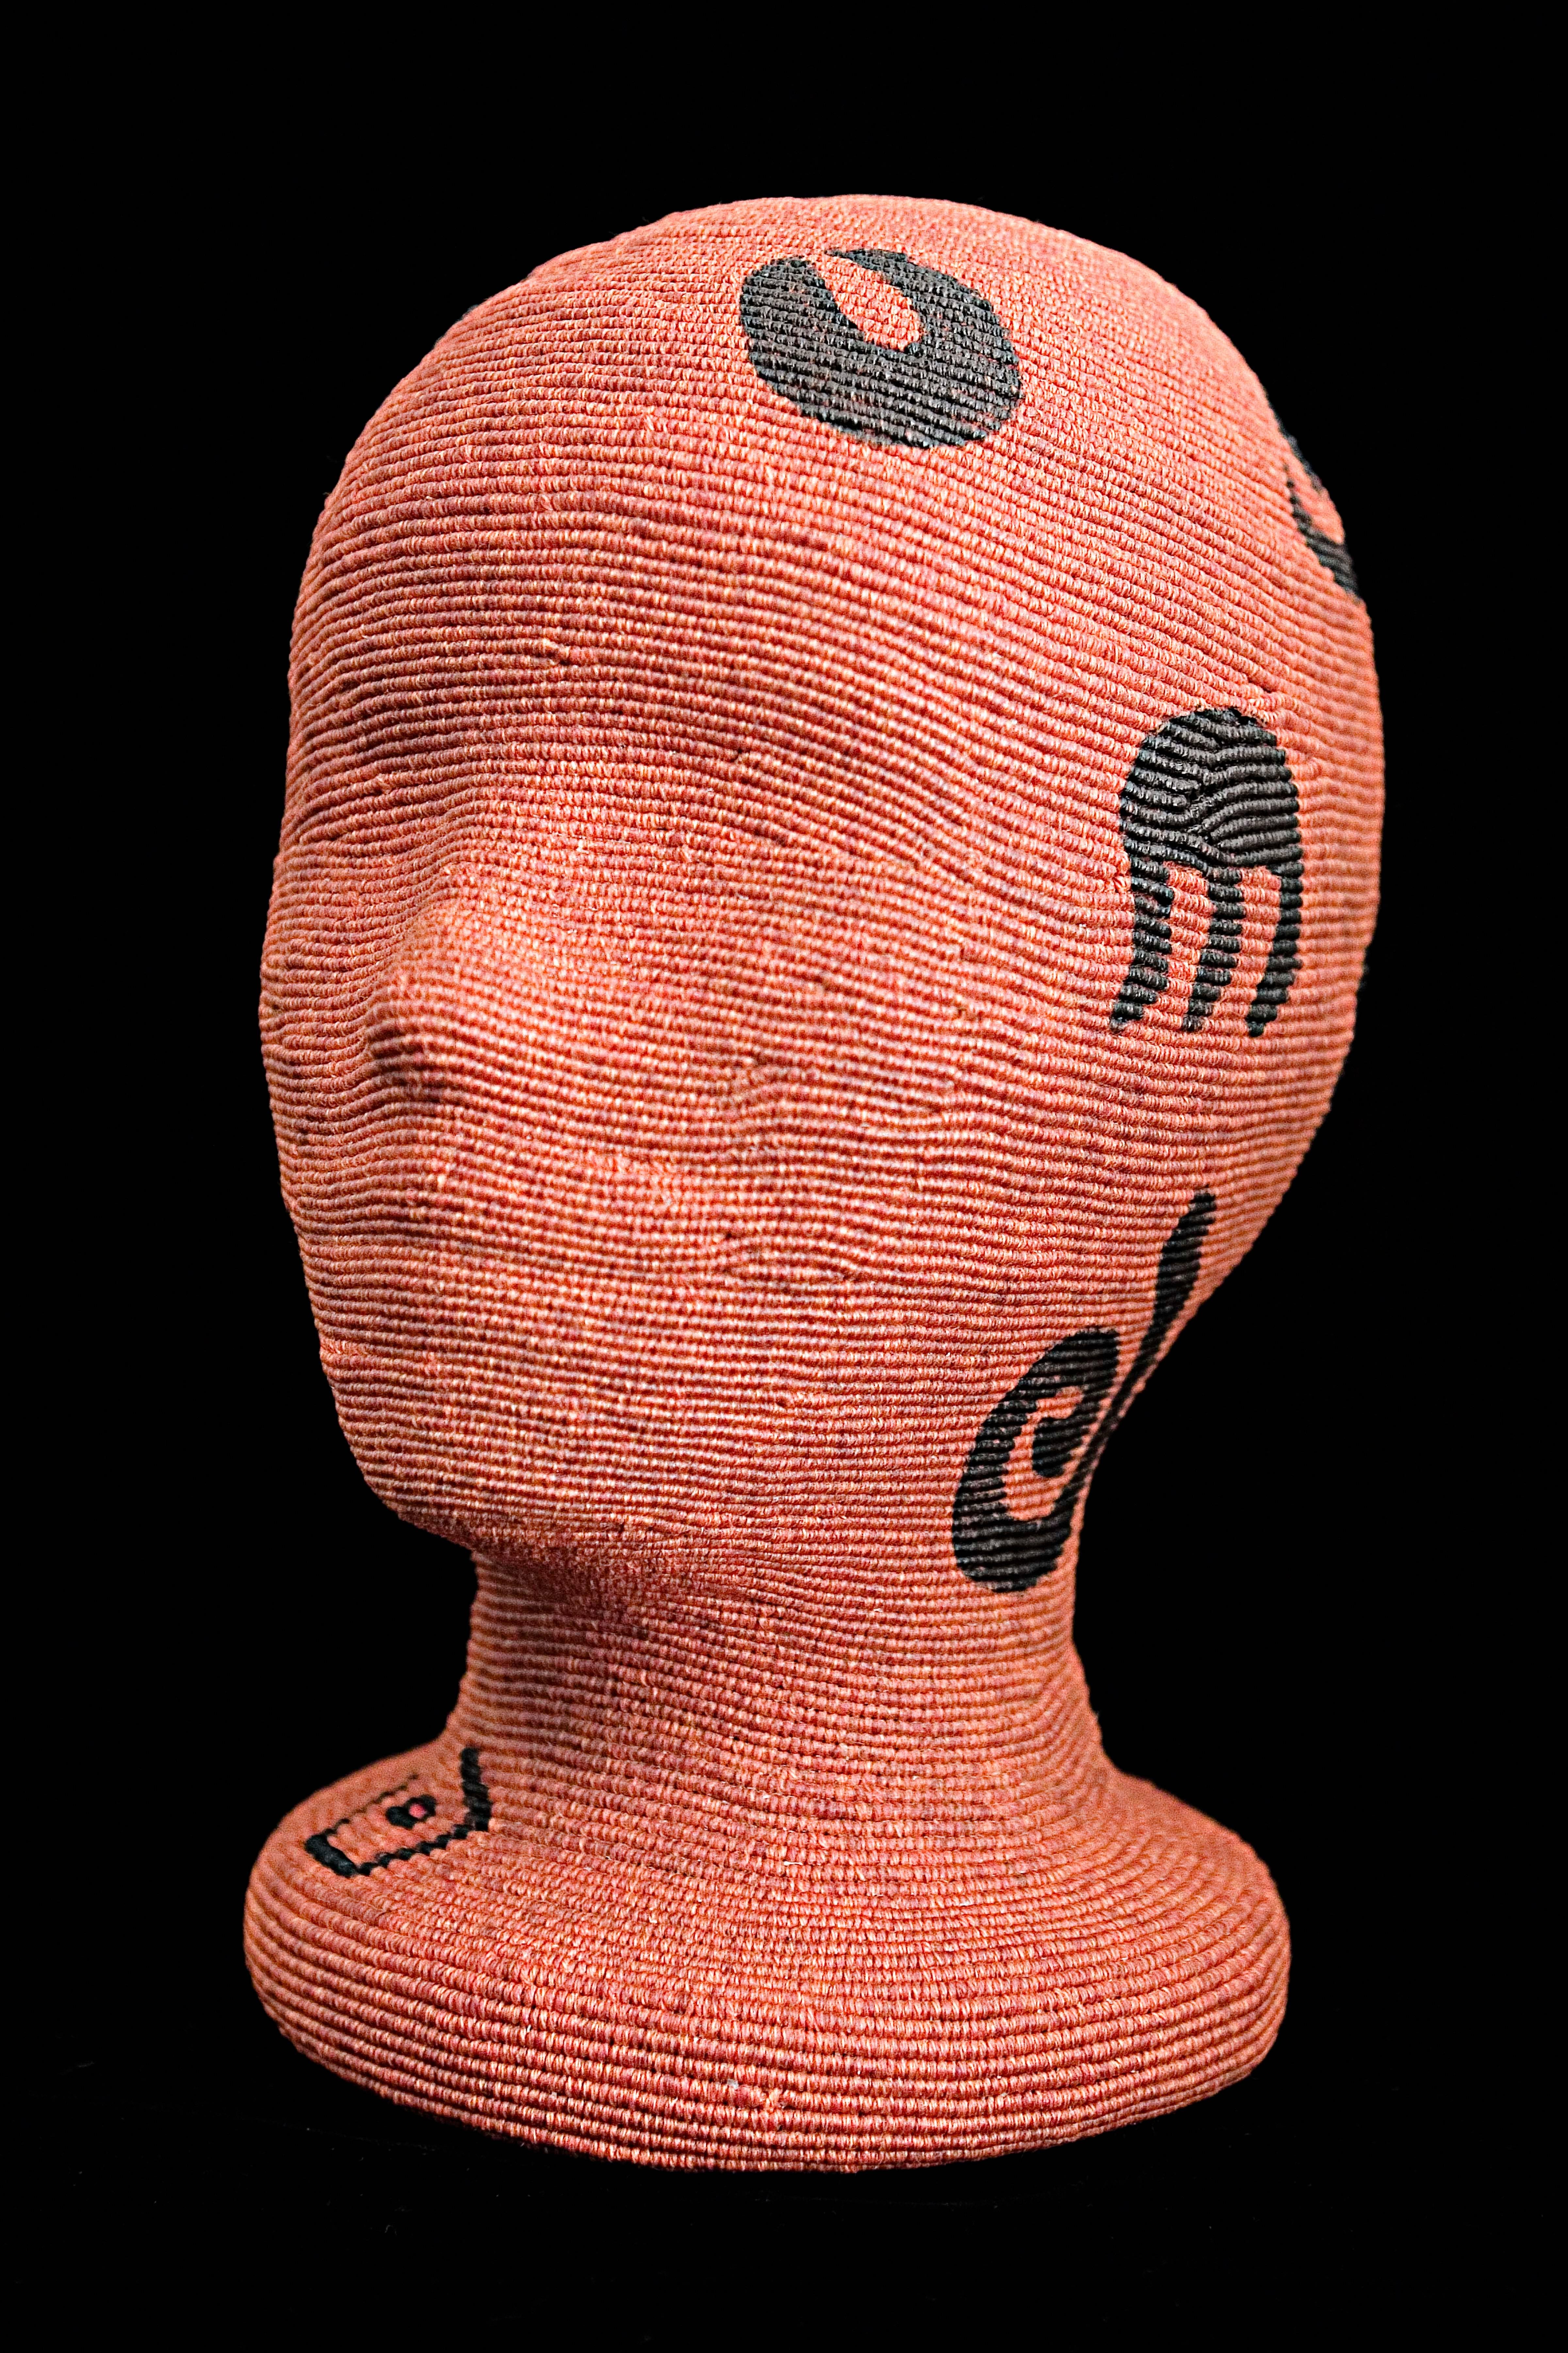 Jane Birdsall-Lander Figurative Sculpture - "Deep Language", Contemporary Waxed Linen Sculpture, Abstract Figurative 